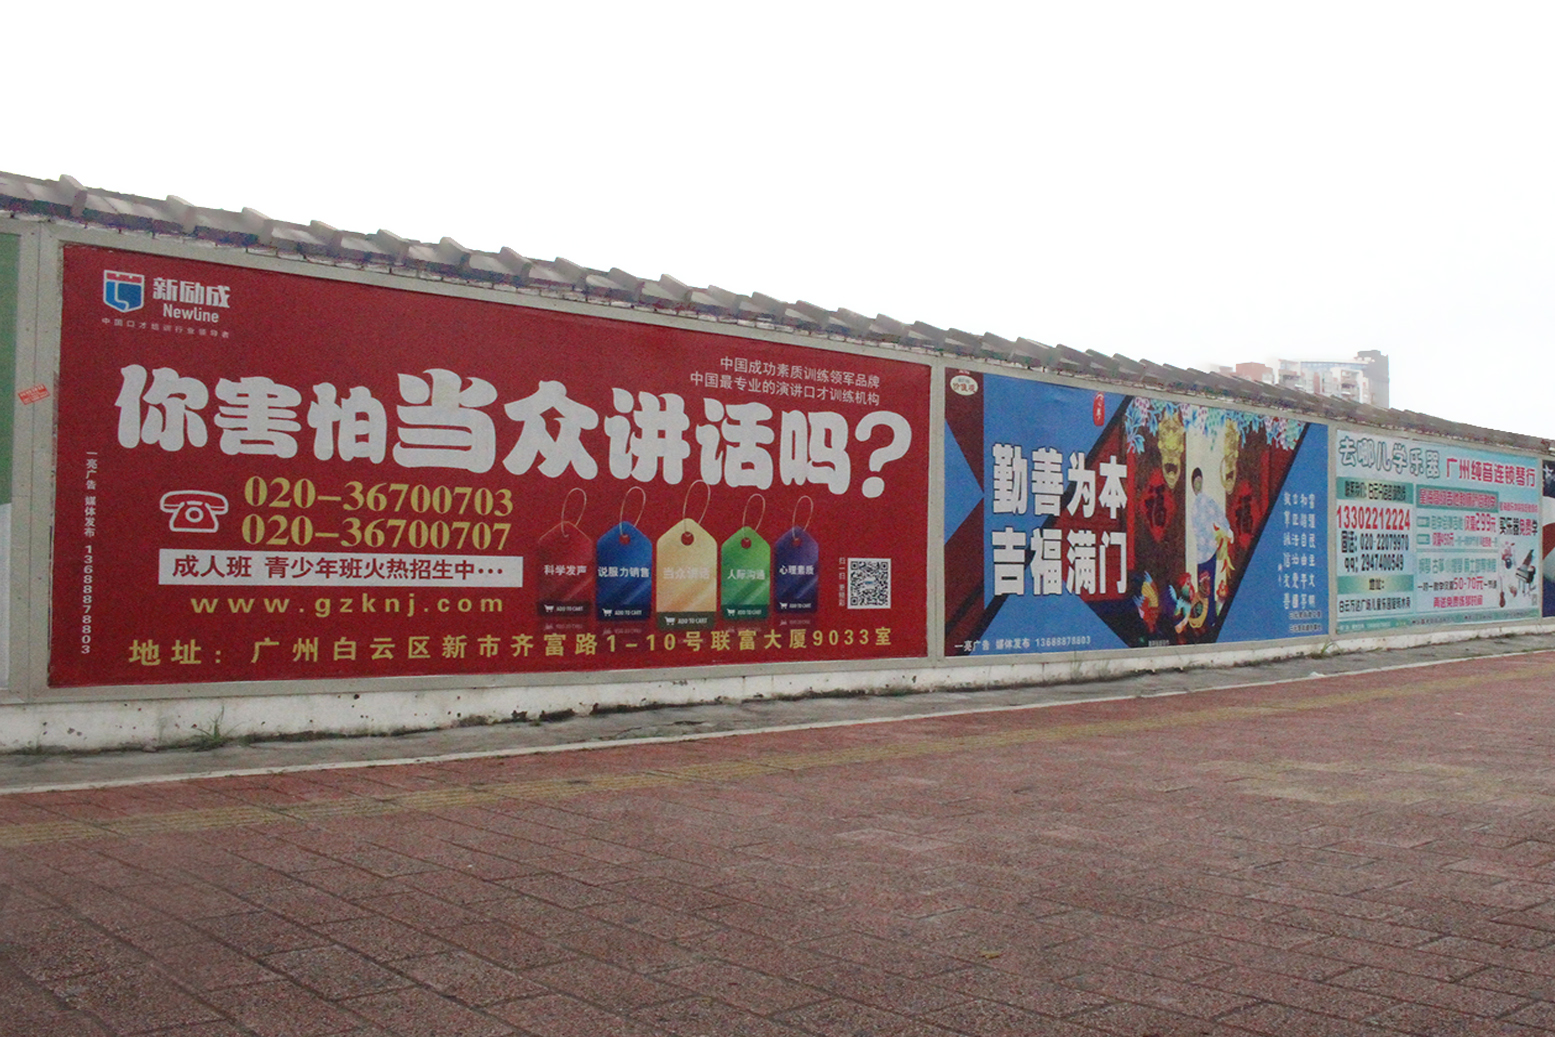 供应广东广州围墙广告发布